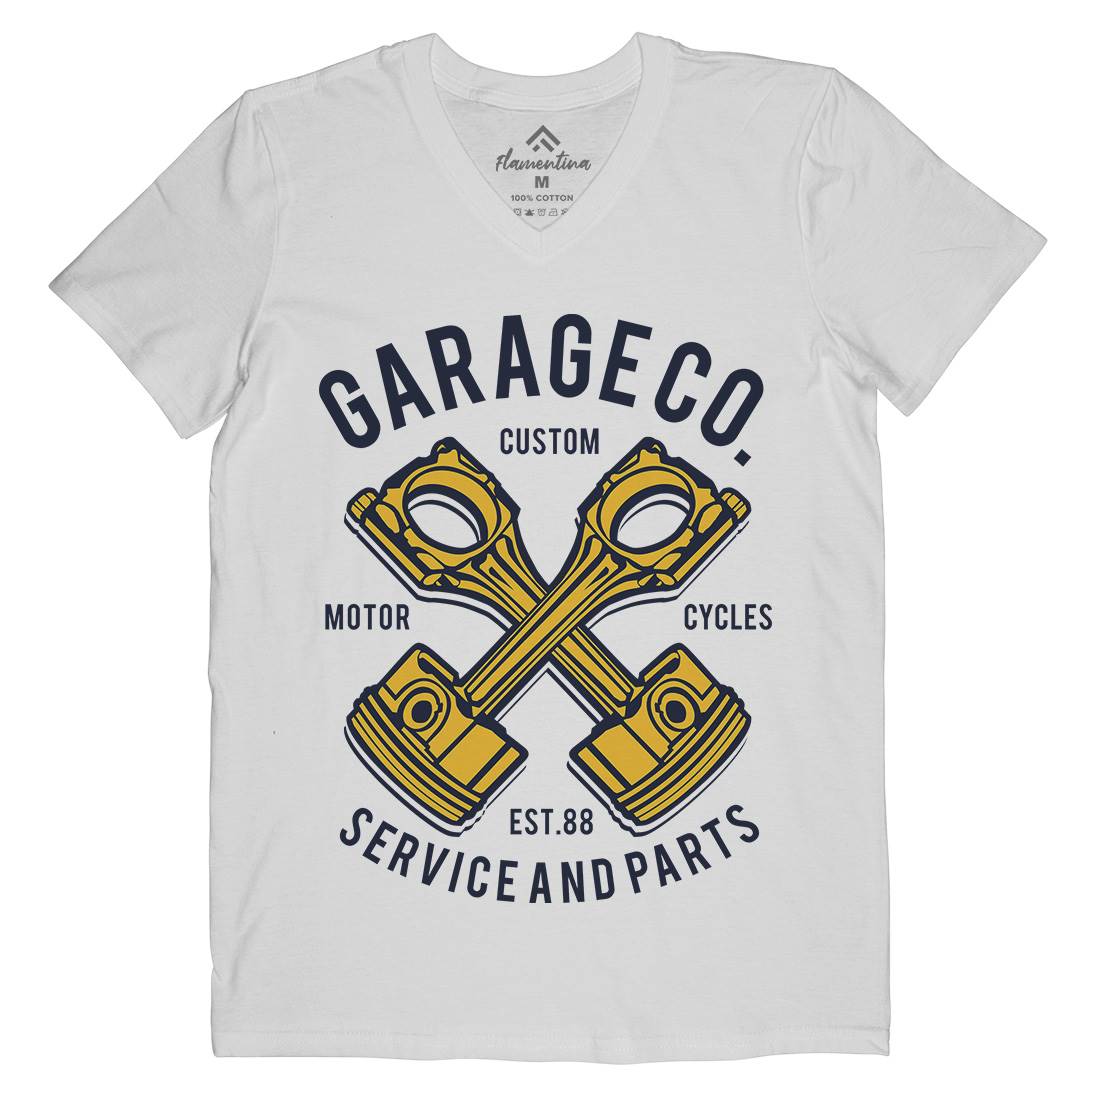 Garage Co Mens Organic V-Neck T-Shirt Cars B216